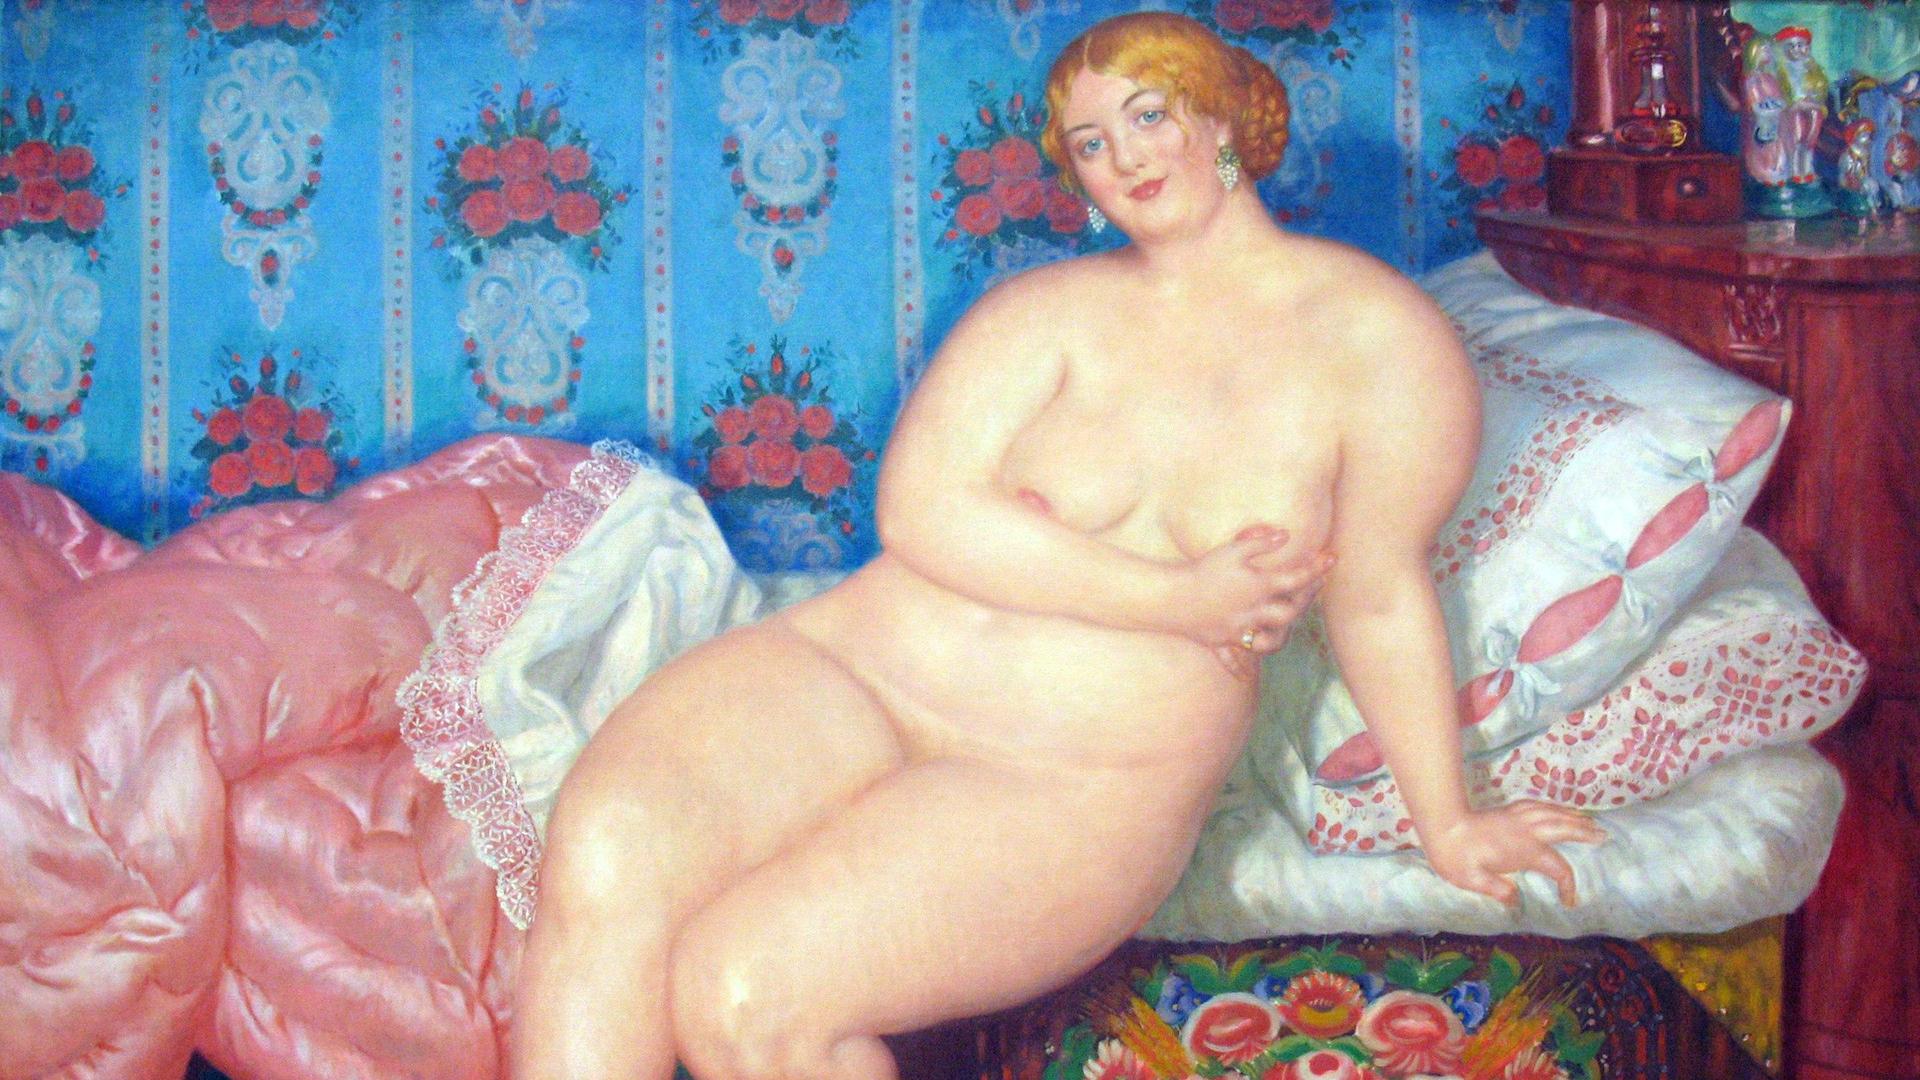 Рисованная порнография 18 19 века (76 фото) - порно и фото голых на lavandasport.ru